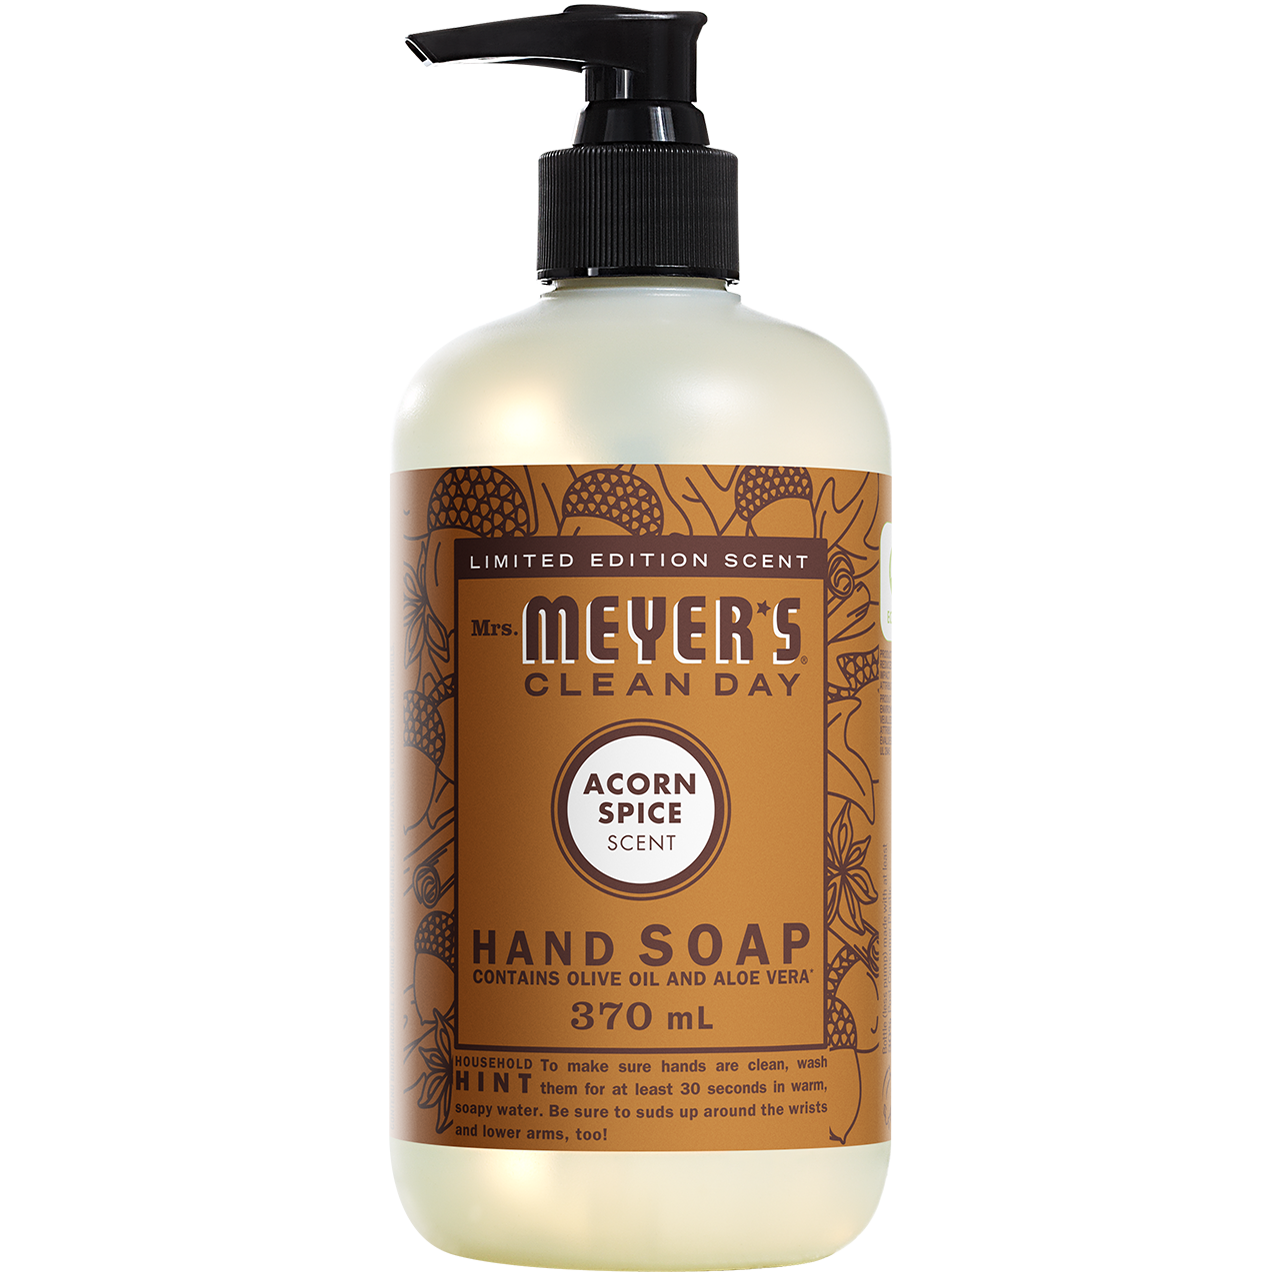 Hand Soap — Acorn Spice (Pre-order)